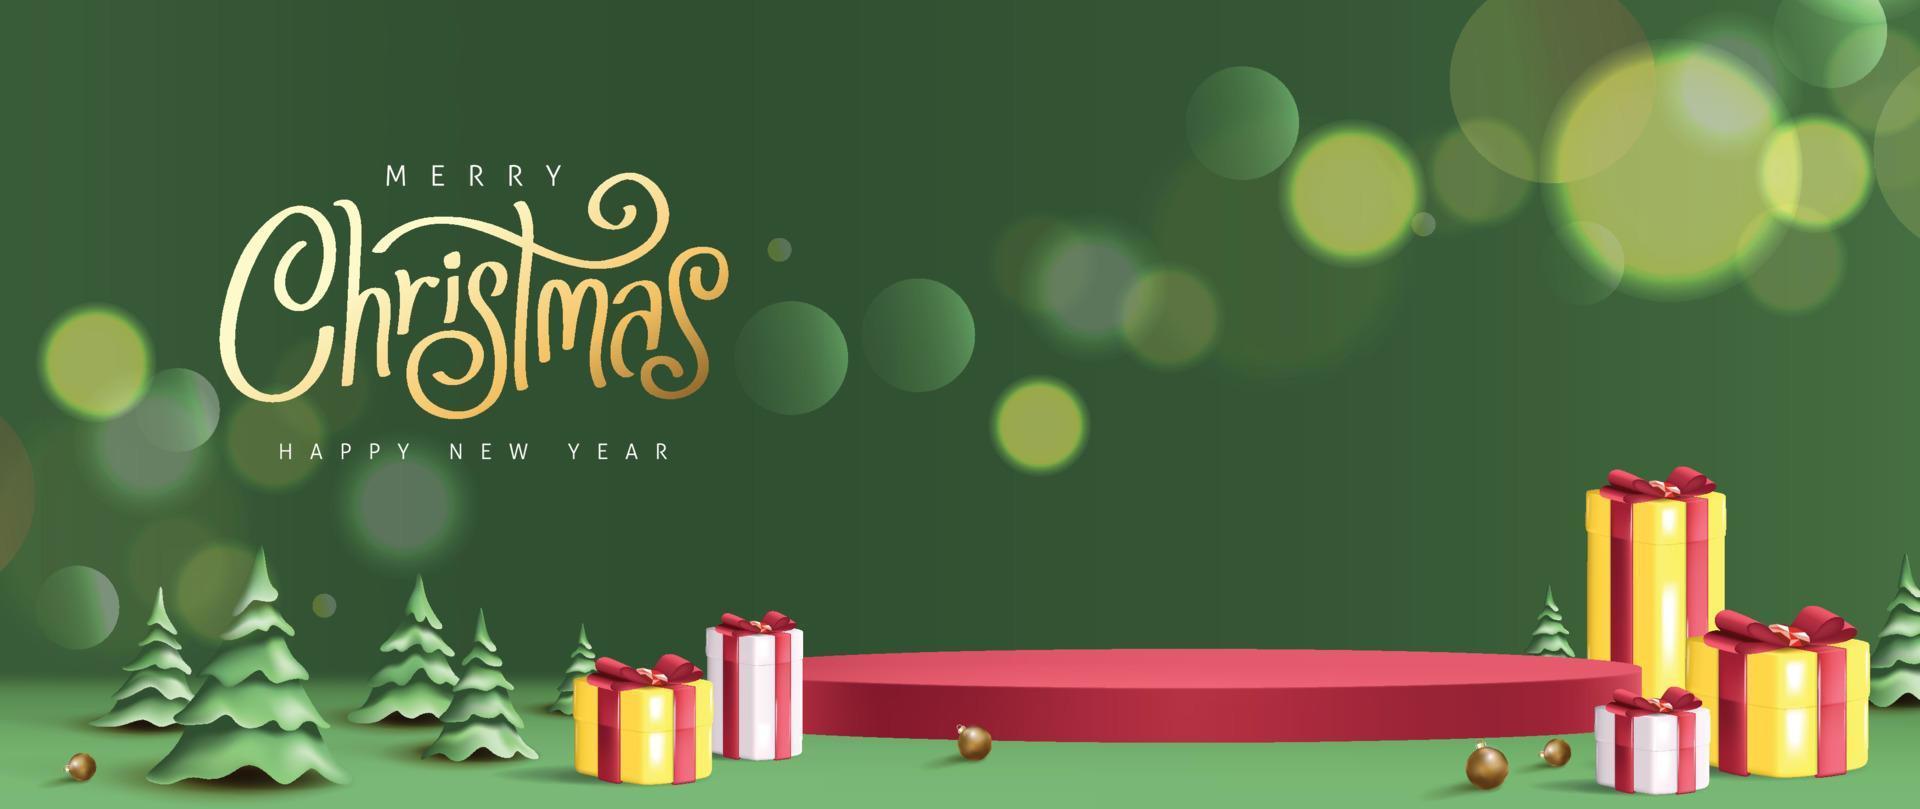 glad jul baner med produkt visa cylindrisk form och gåva låda röd rosett dekoration grön bakgrund vektor